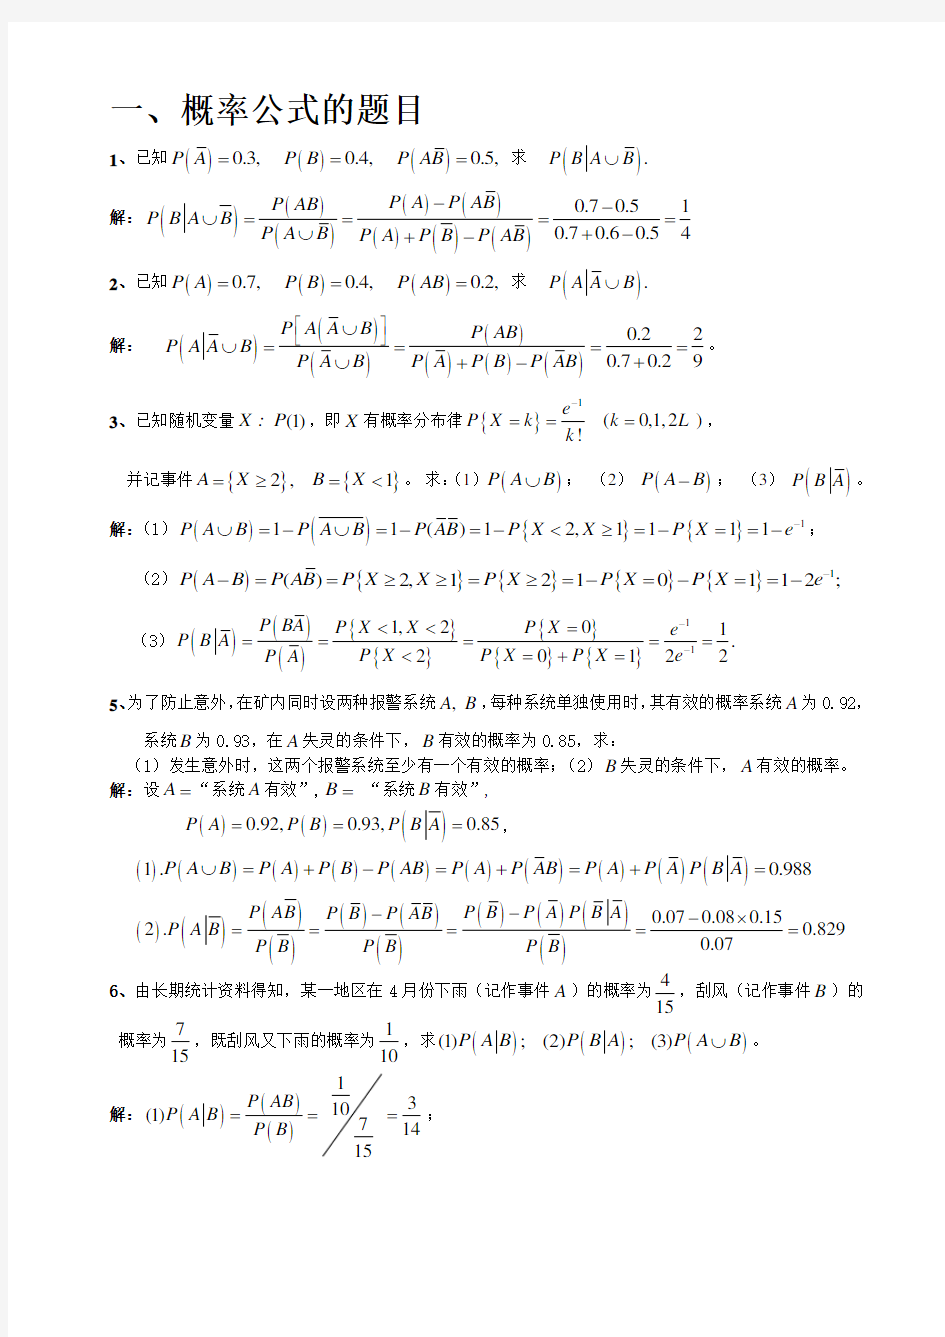 概率论与数理统计C的习题集-计算题